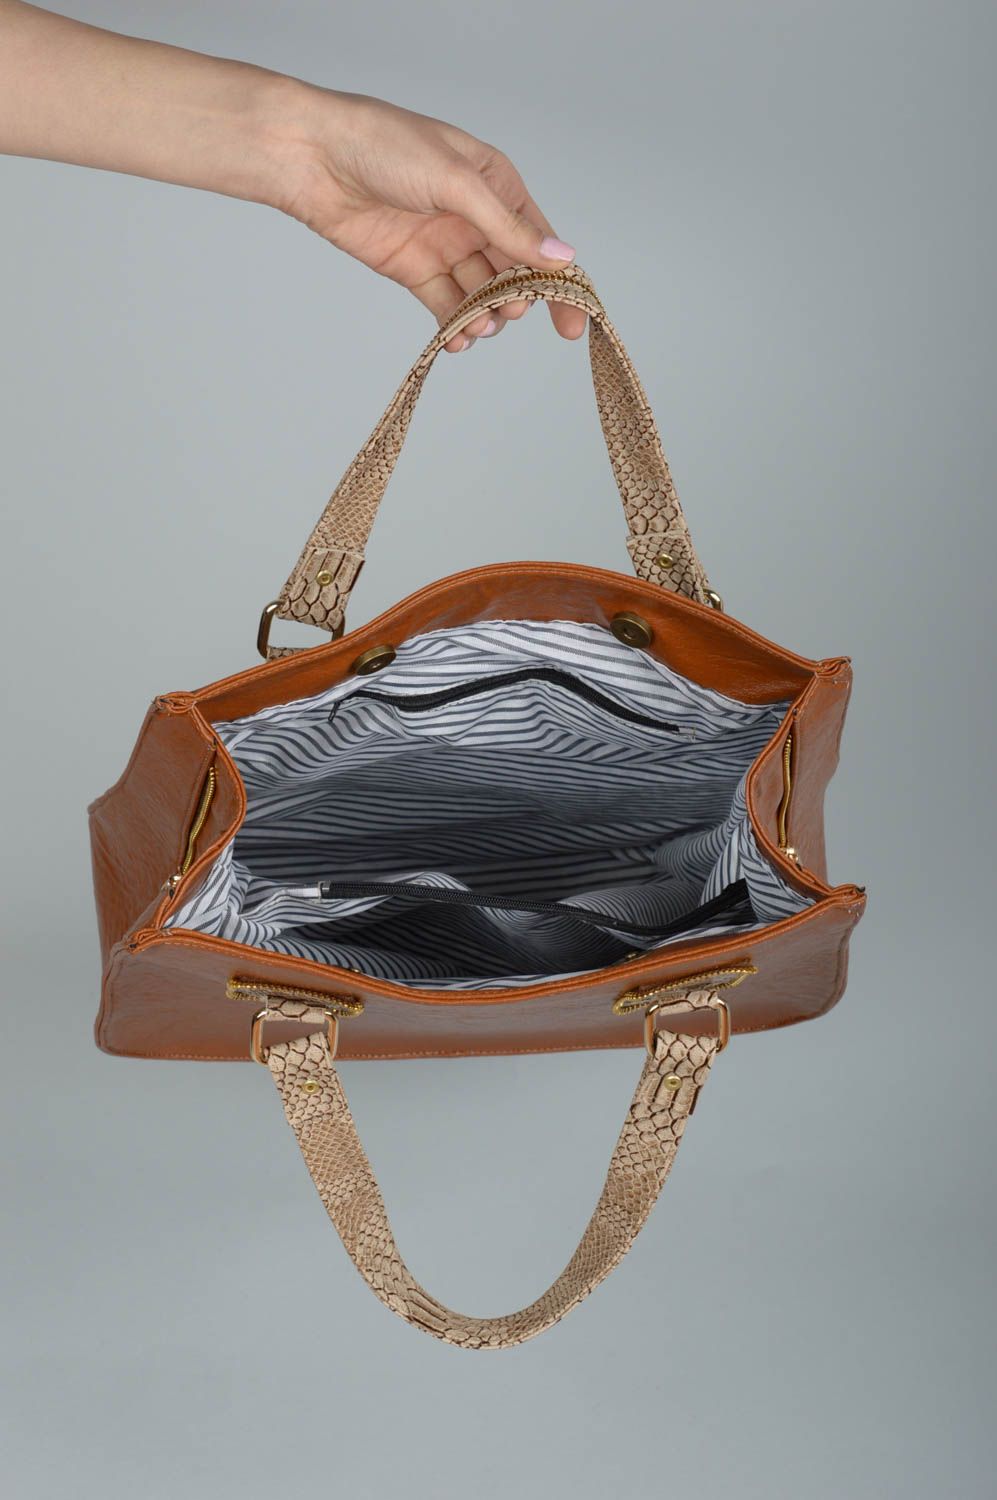 Handmade bag shoulder bag brown leatherette bag present for women stylish bag photo 3